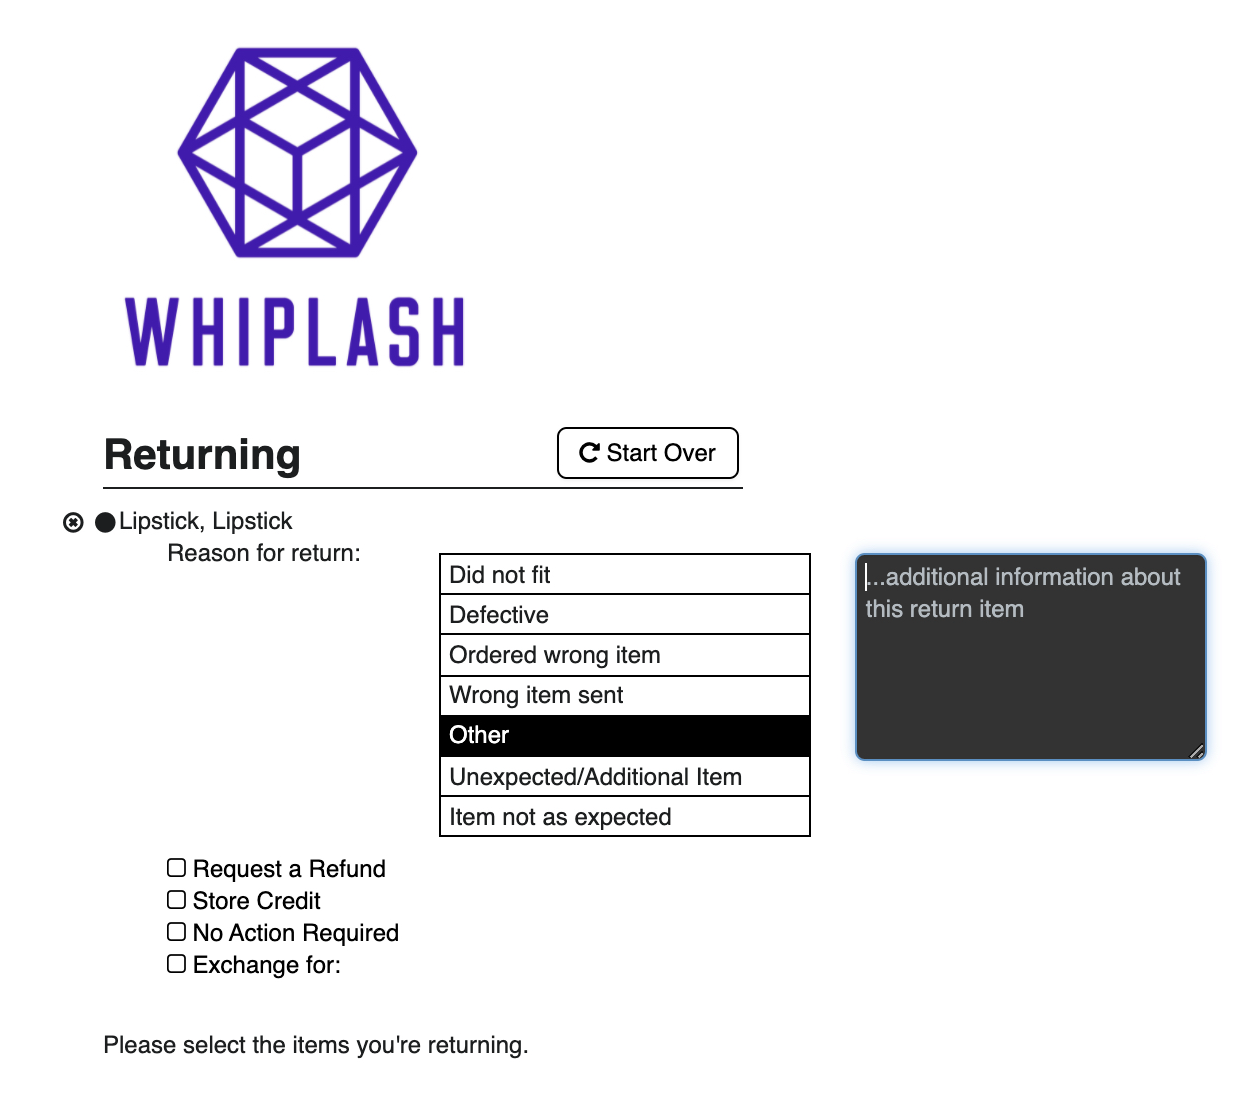 Whiplash_Returns_2021-06-17_12-00-07.png